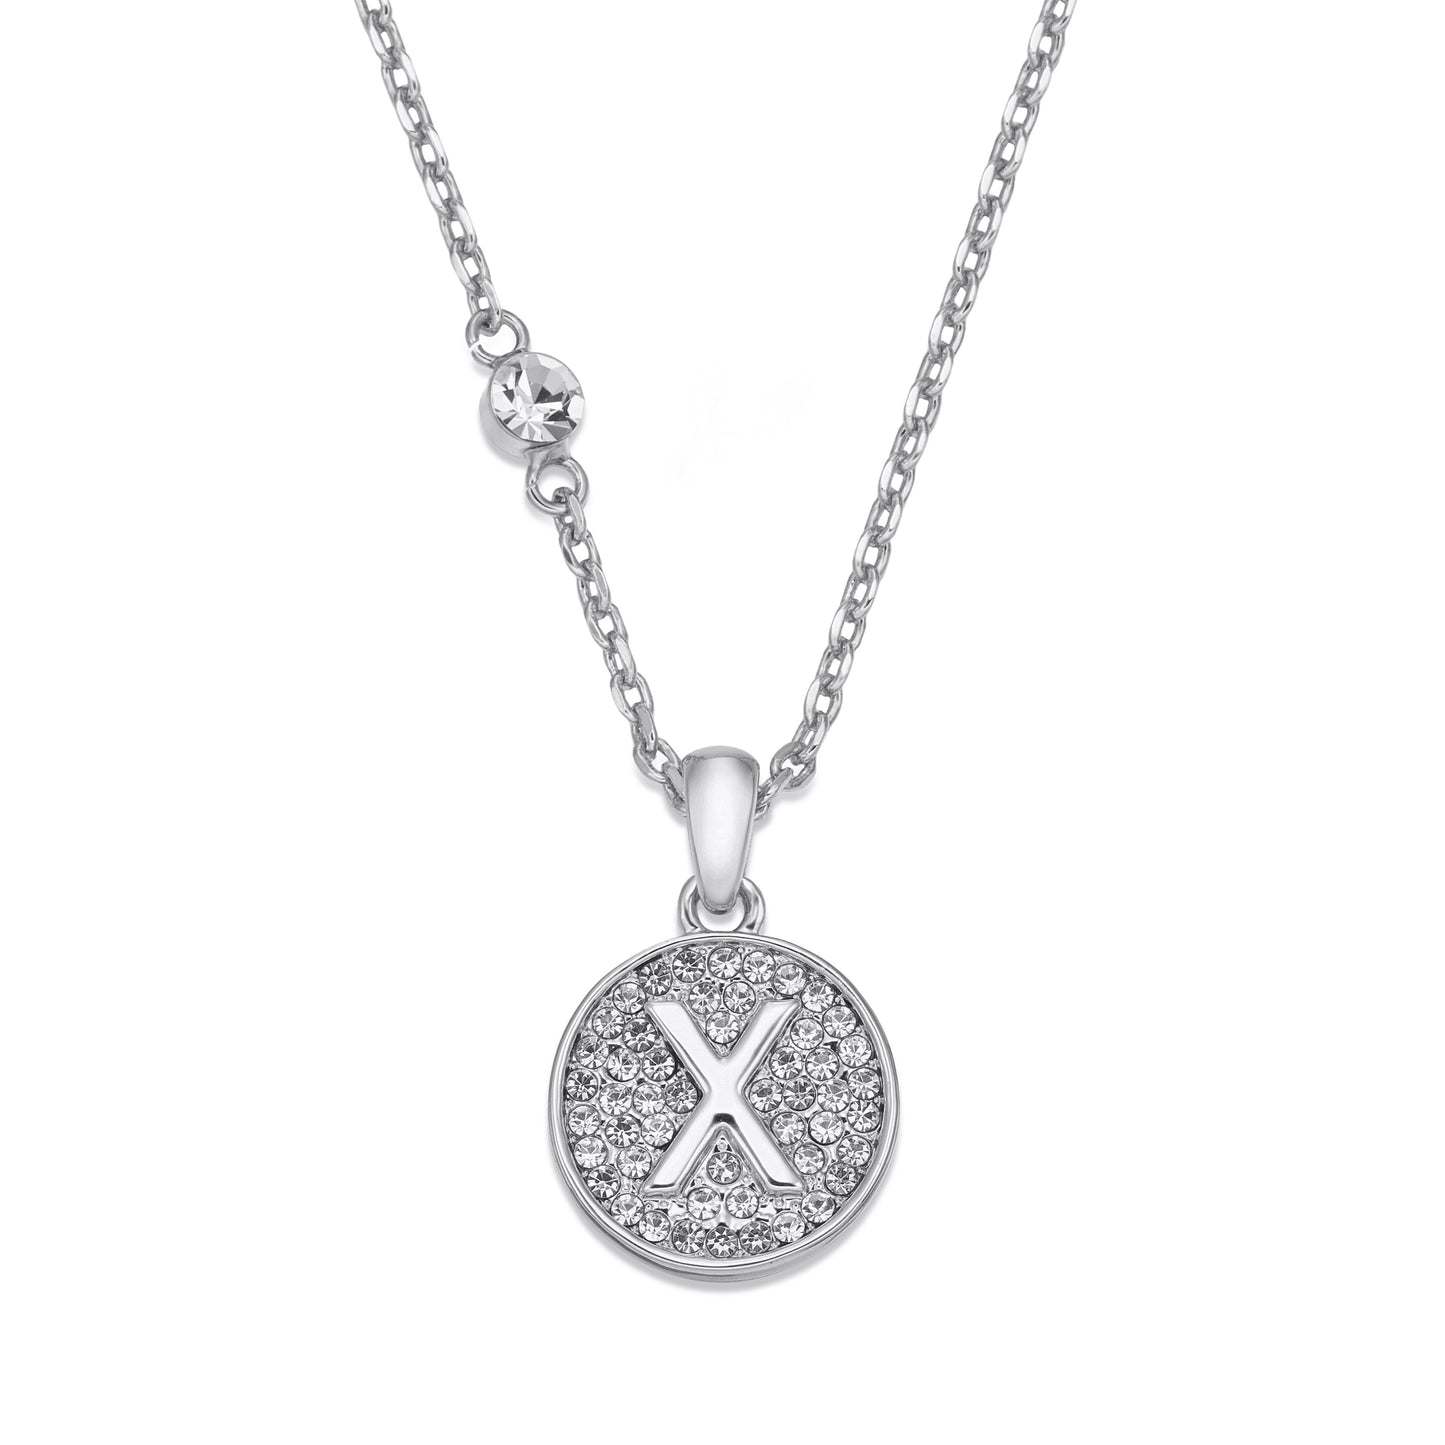 Rhodium necklace with initial | ${Vendor}